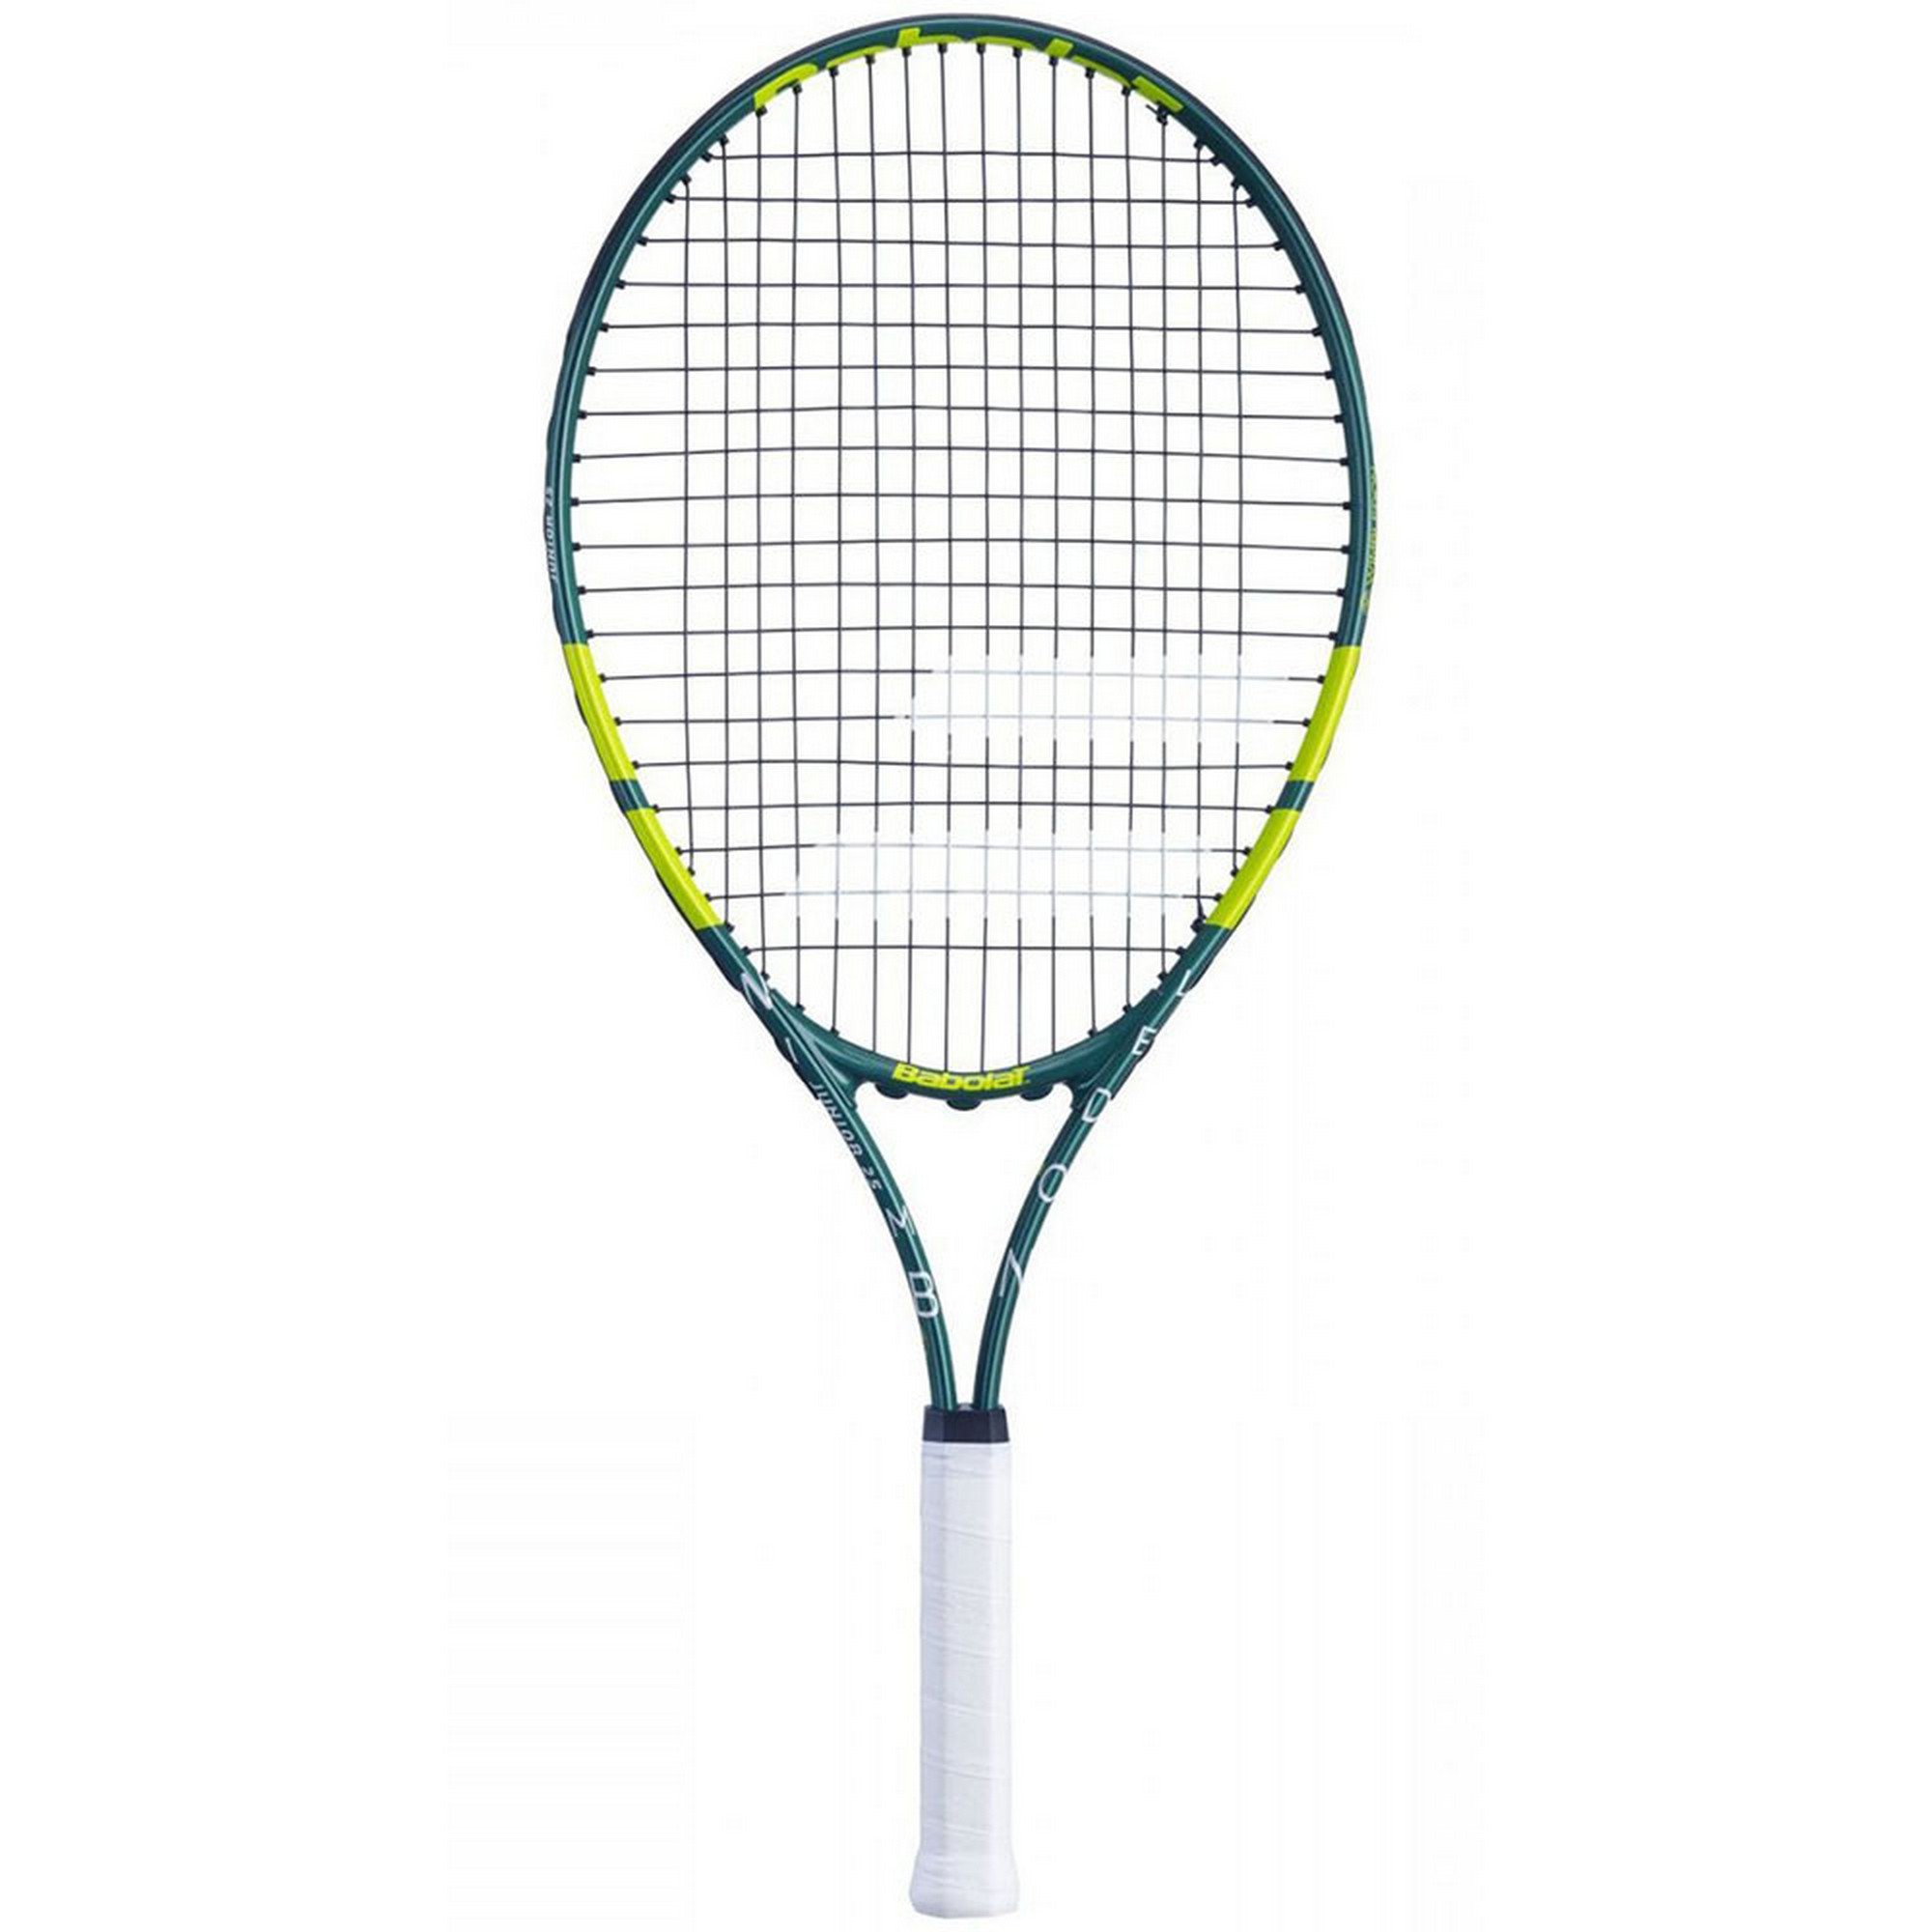 Ракетка для большого тенниса детская 9-10 лет Babolat Wimbledon Junior 25 Gr00 140447 зелено-салатовый